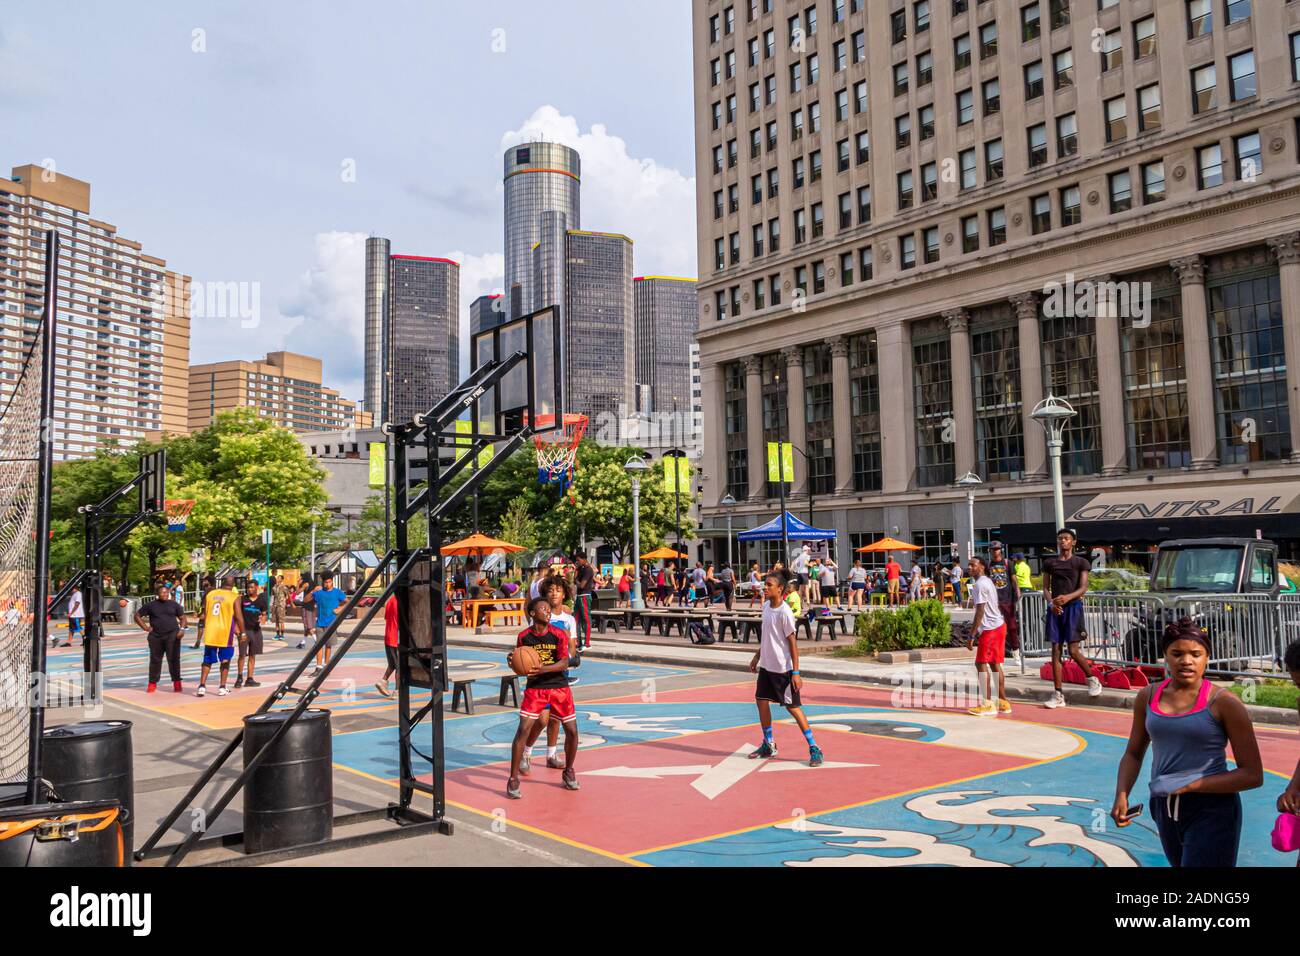 Détroit, USA - 8 août 2018 : enfants américains jouant au basket-ball dans le centre-ville. Banque D'Images